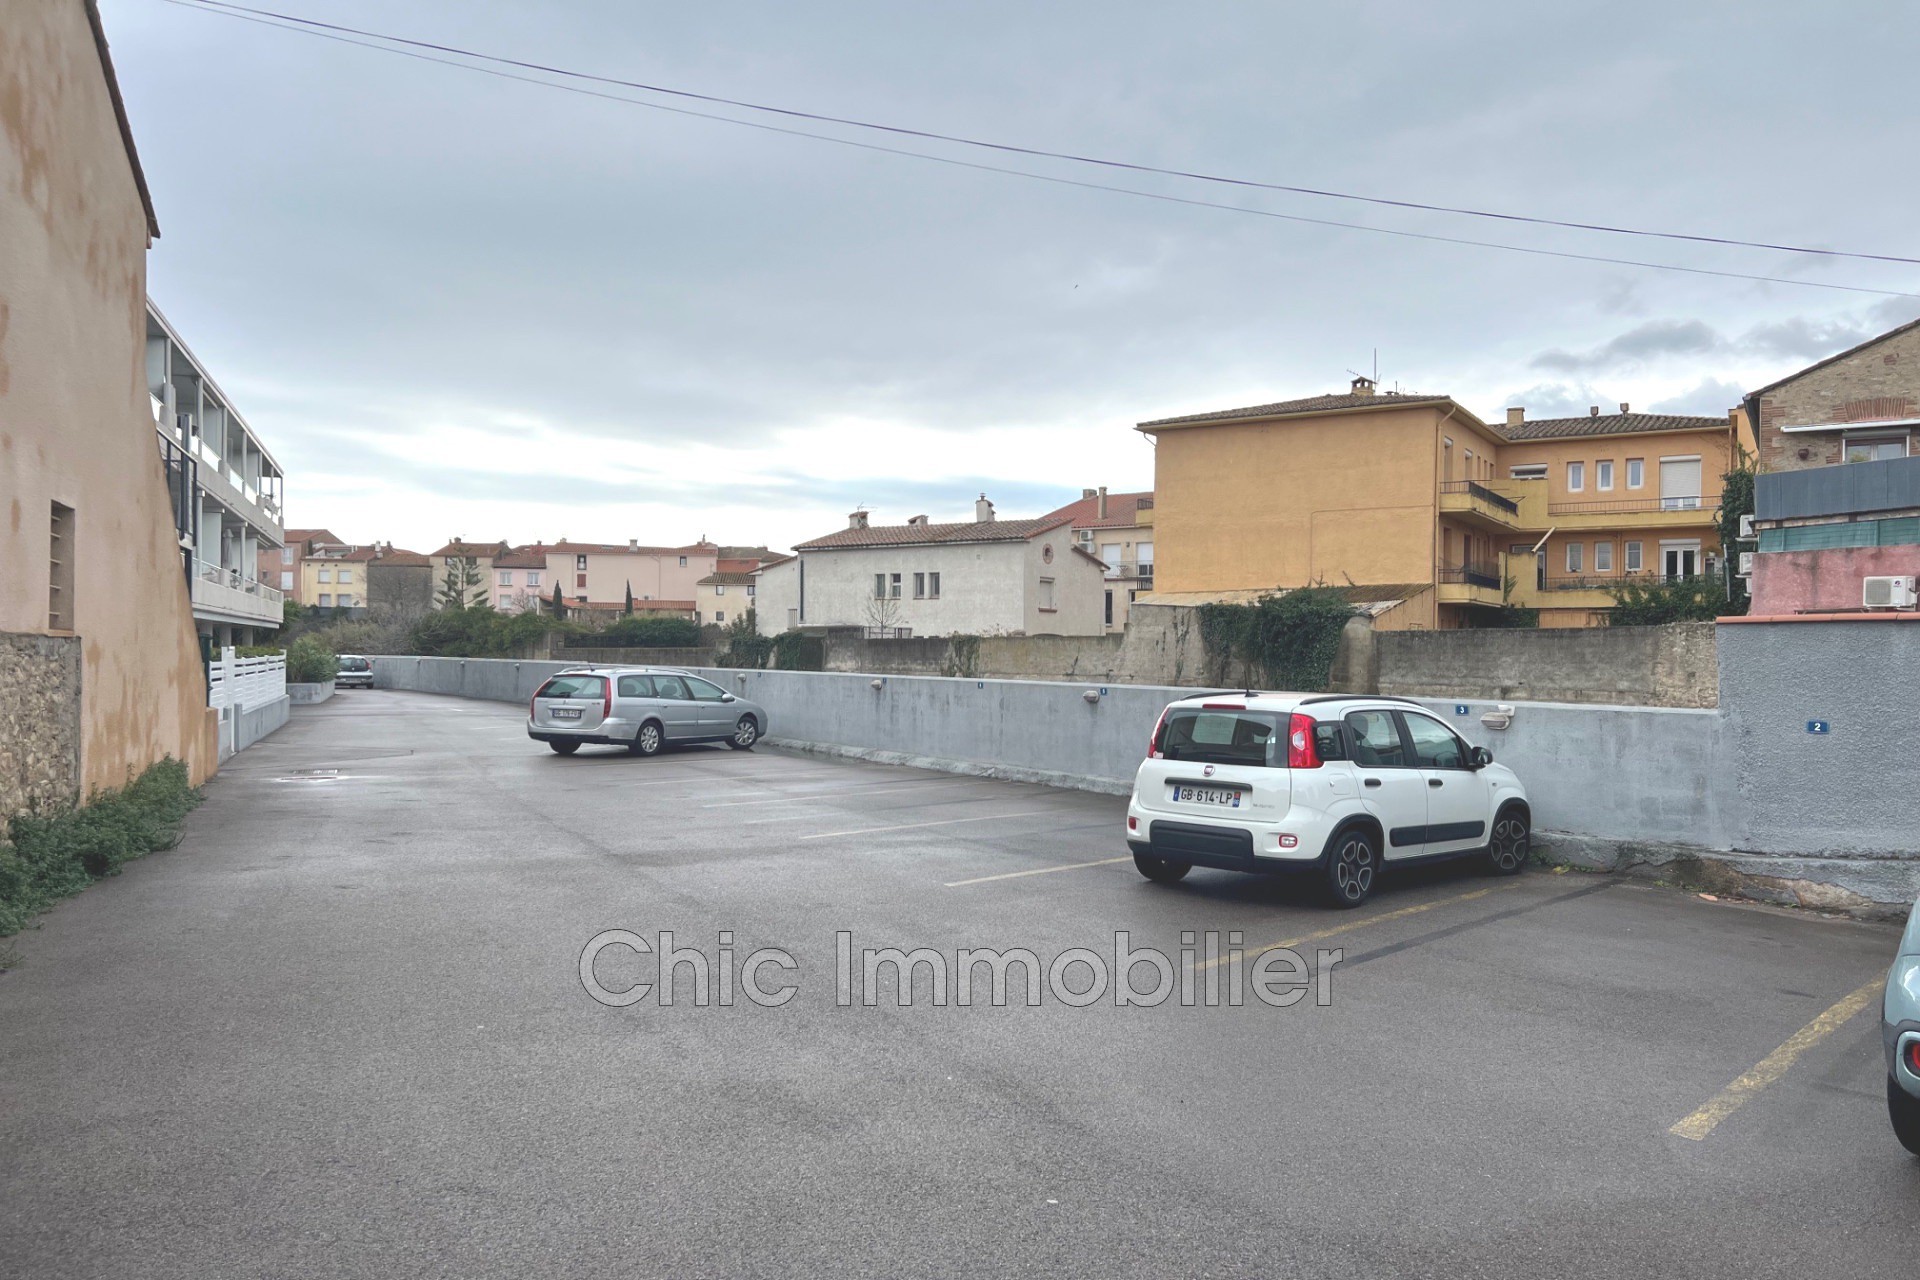 Vente Garage / Parking à Argelès-sur-Mer 0 pièce